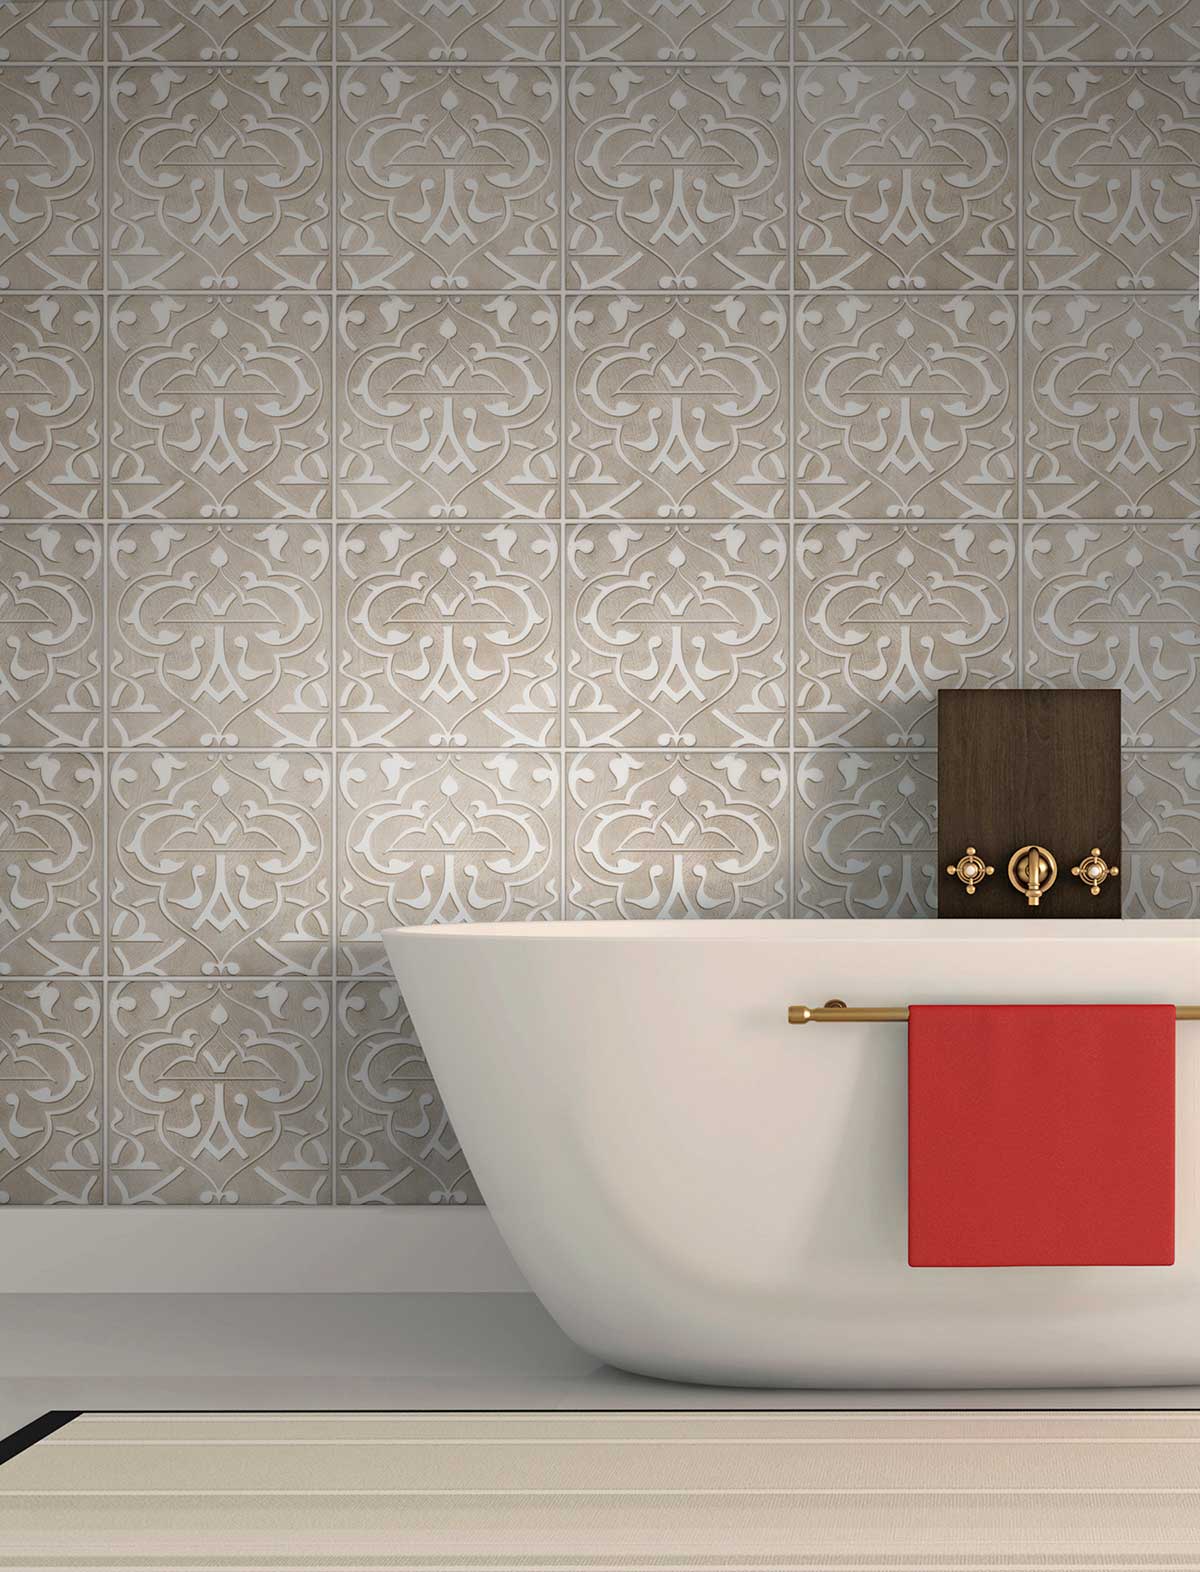 Decorative bathroom tile - Charmed Night Taupe Bathroom